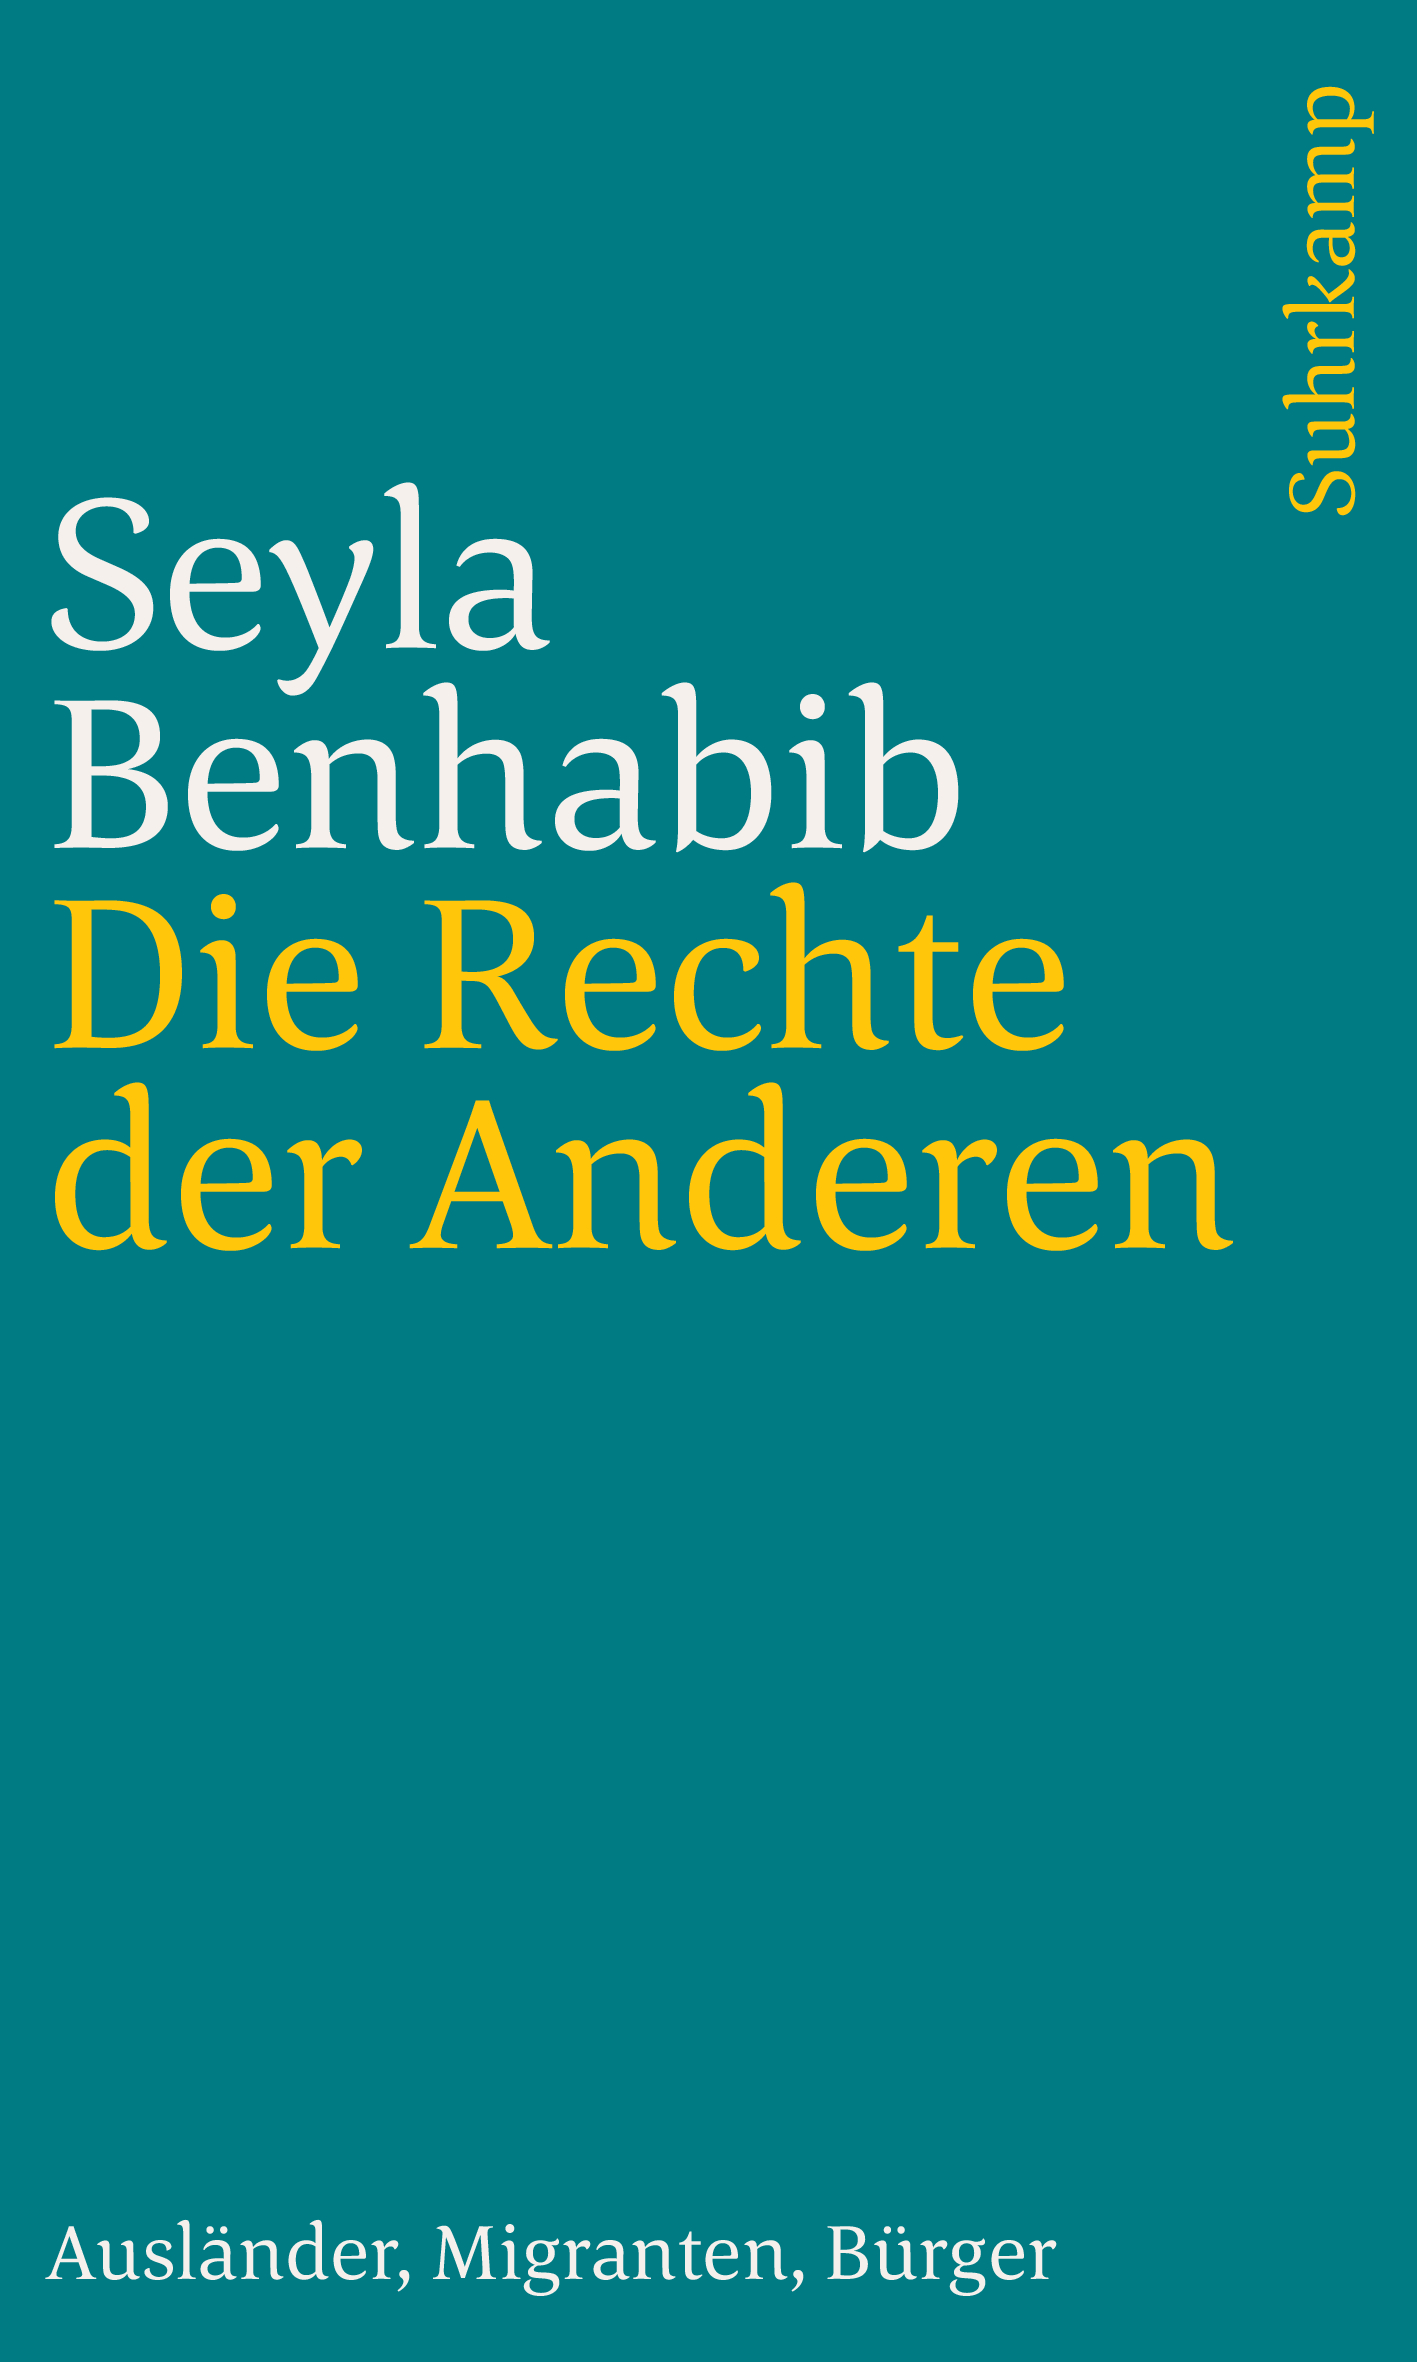 Benhabib, Seyla: Die Rechte der Anderen, 2008